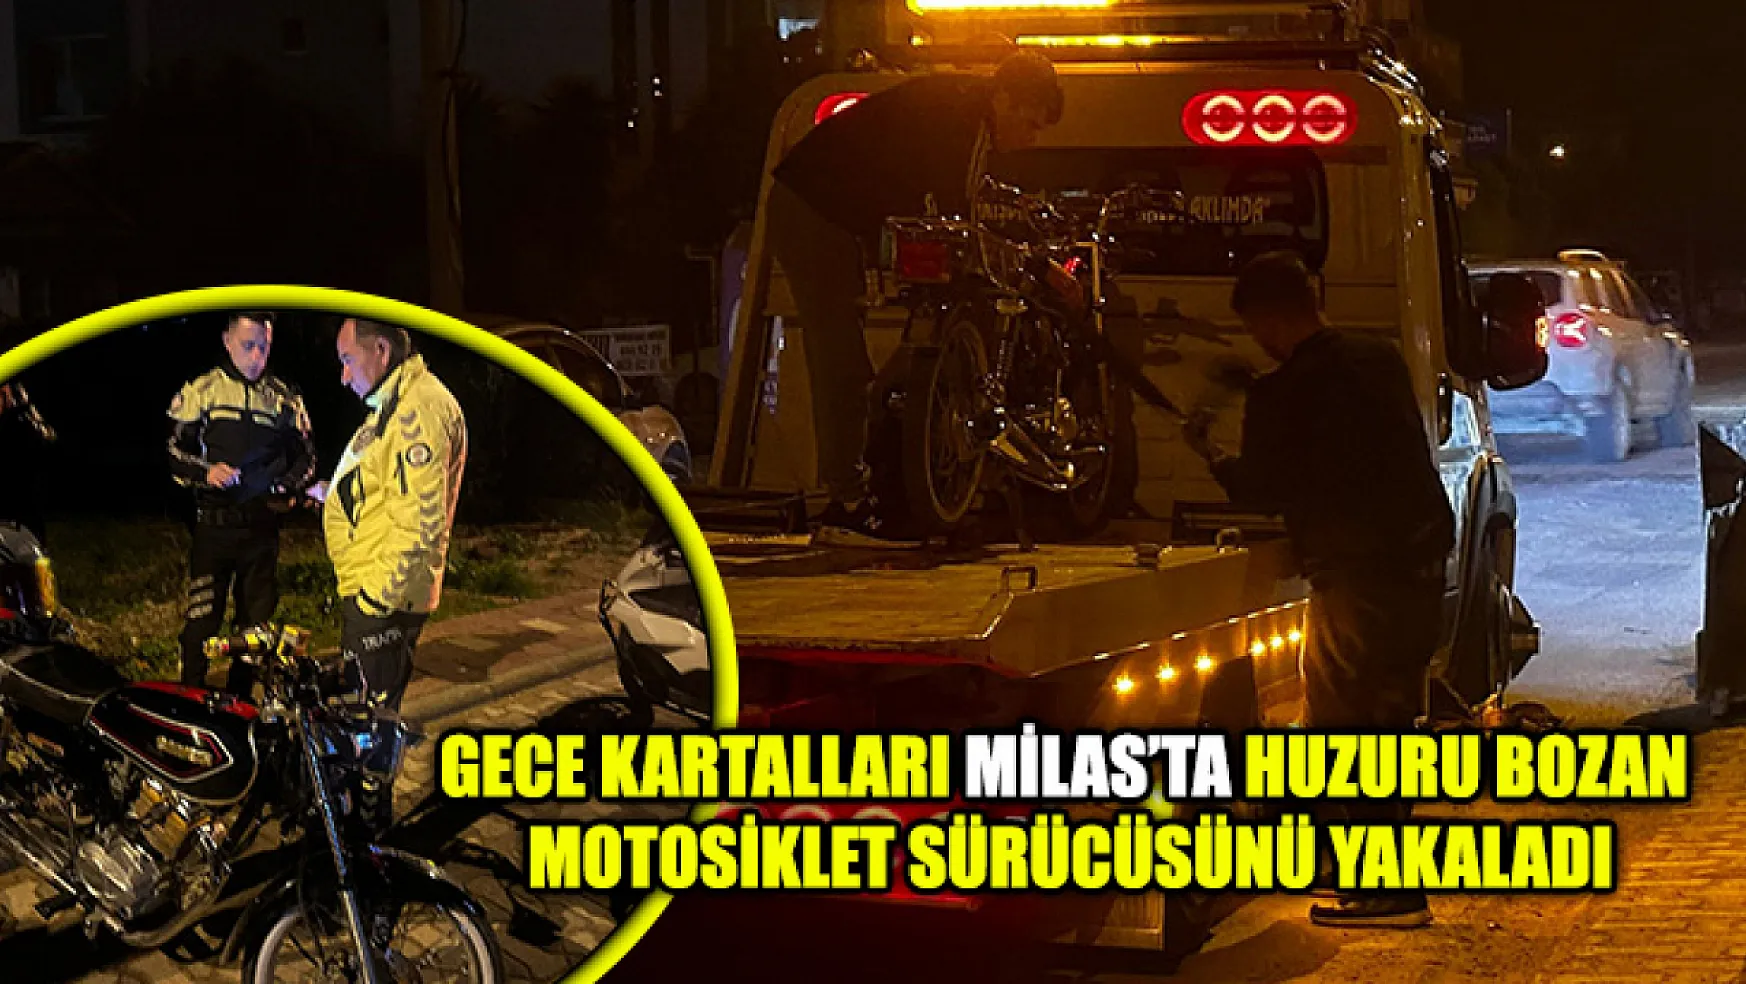 Gece Kartalları Milas'ta Huzuru Bozan Motosiklet Sürücüsünü Yakaladı